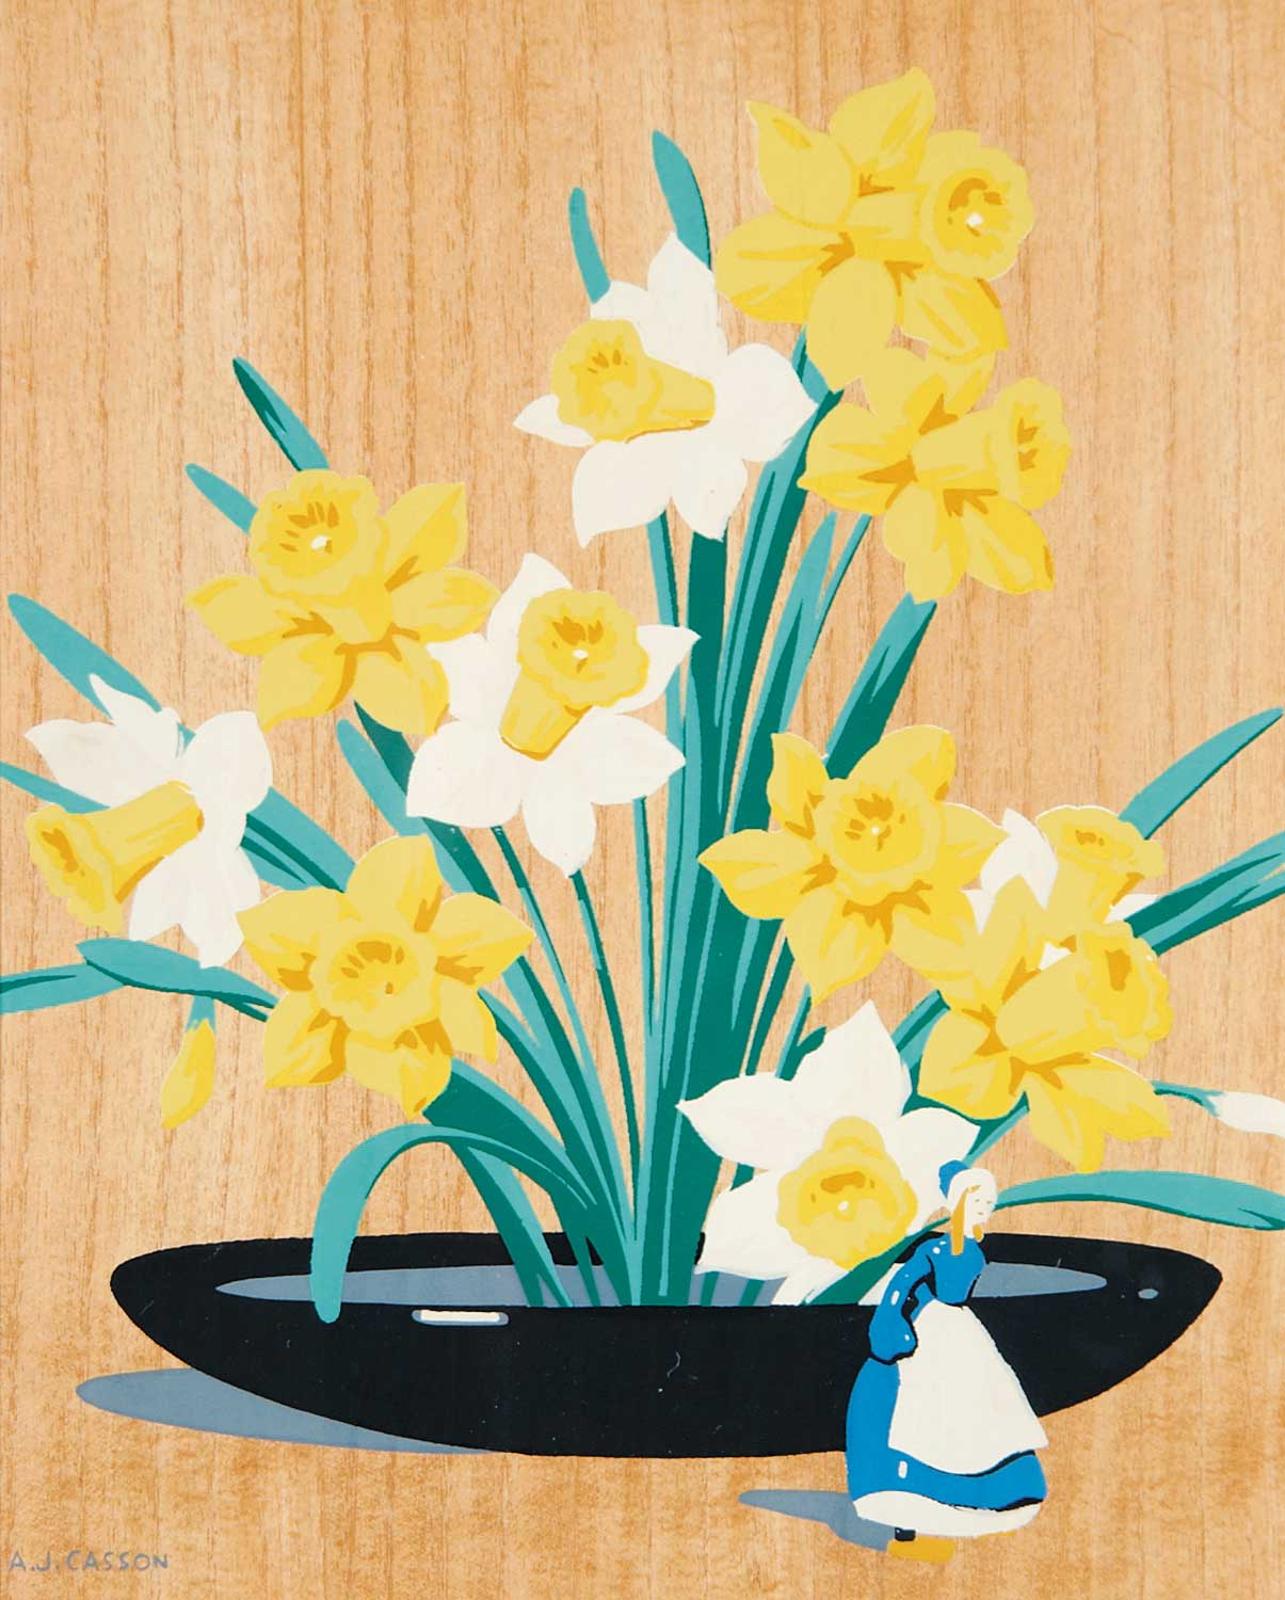 Alfred Joseph (A.J.) Casson (1898-1992) - Daffodils with Delft Figurine